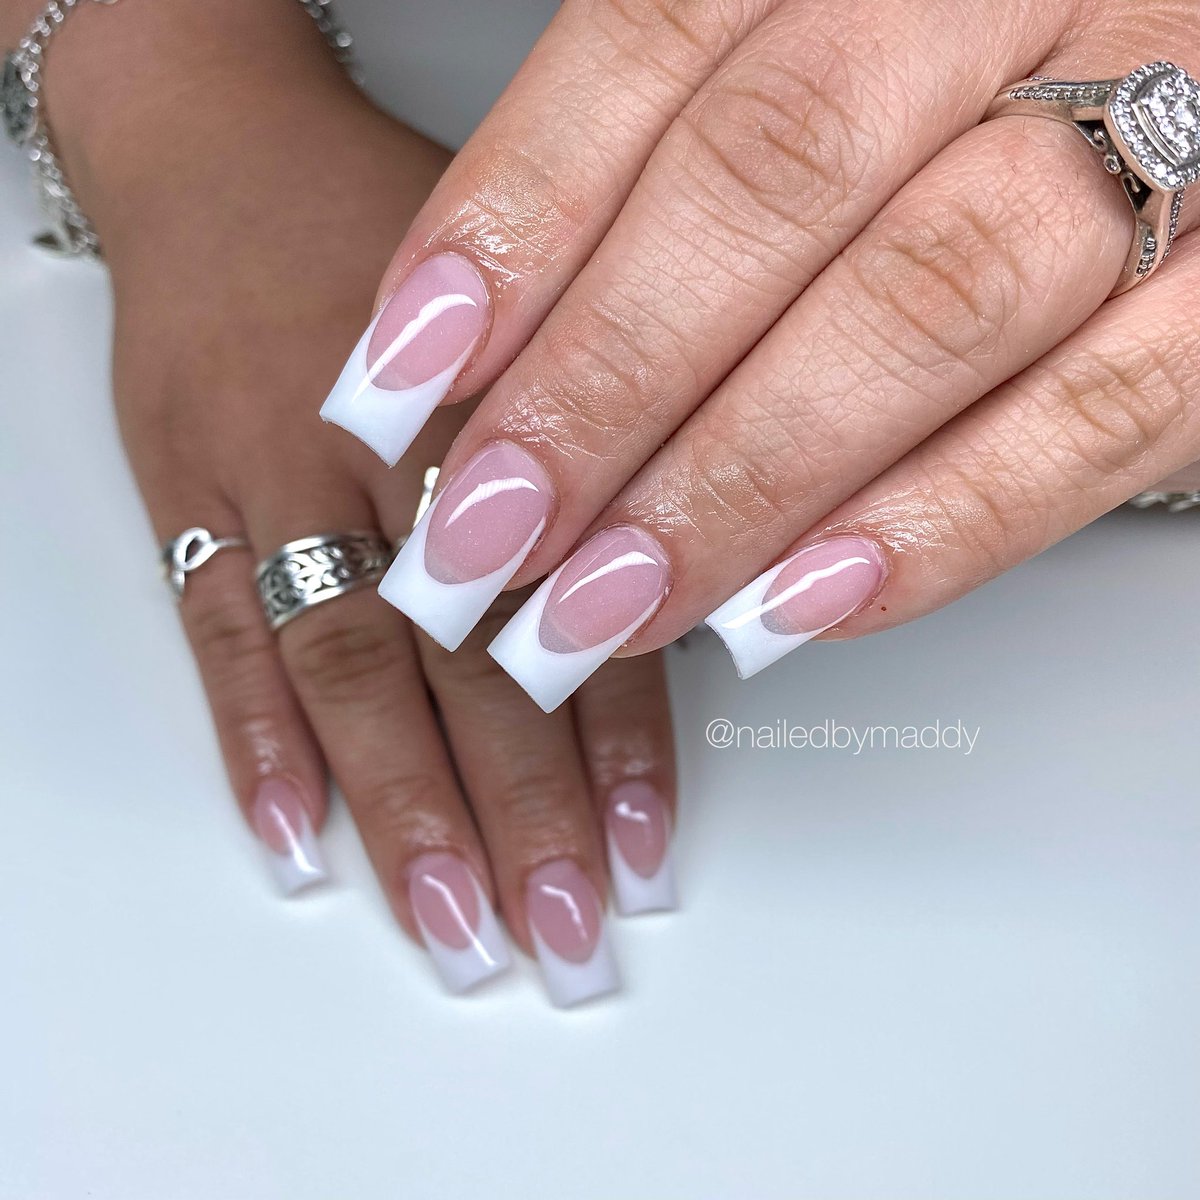 French Tips 😮‍💨🤍 
Length~Short
-
Platinum Silk & Super White  
-
#nails #nailsnailsnails #nailsoftheday #acrylicnails #uñasacrilicas #nailstagram #nailsdone #nailslove #nailsofig #nailedbymaddy #nailsinspo #nailart #houstonnails #french #frenchtip #frenchtipnails #acrylicfrench